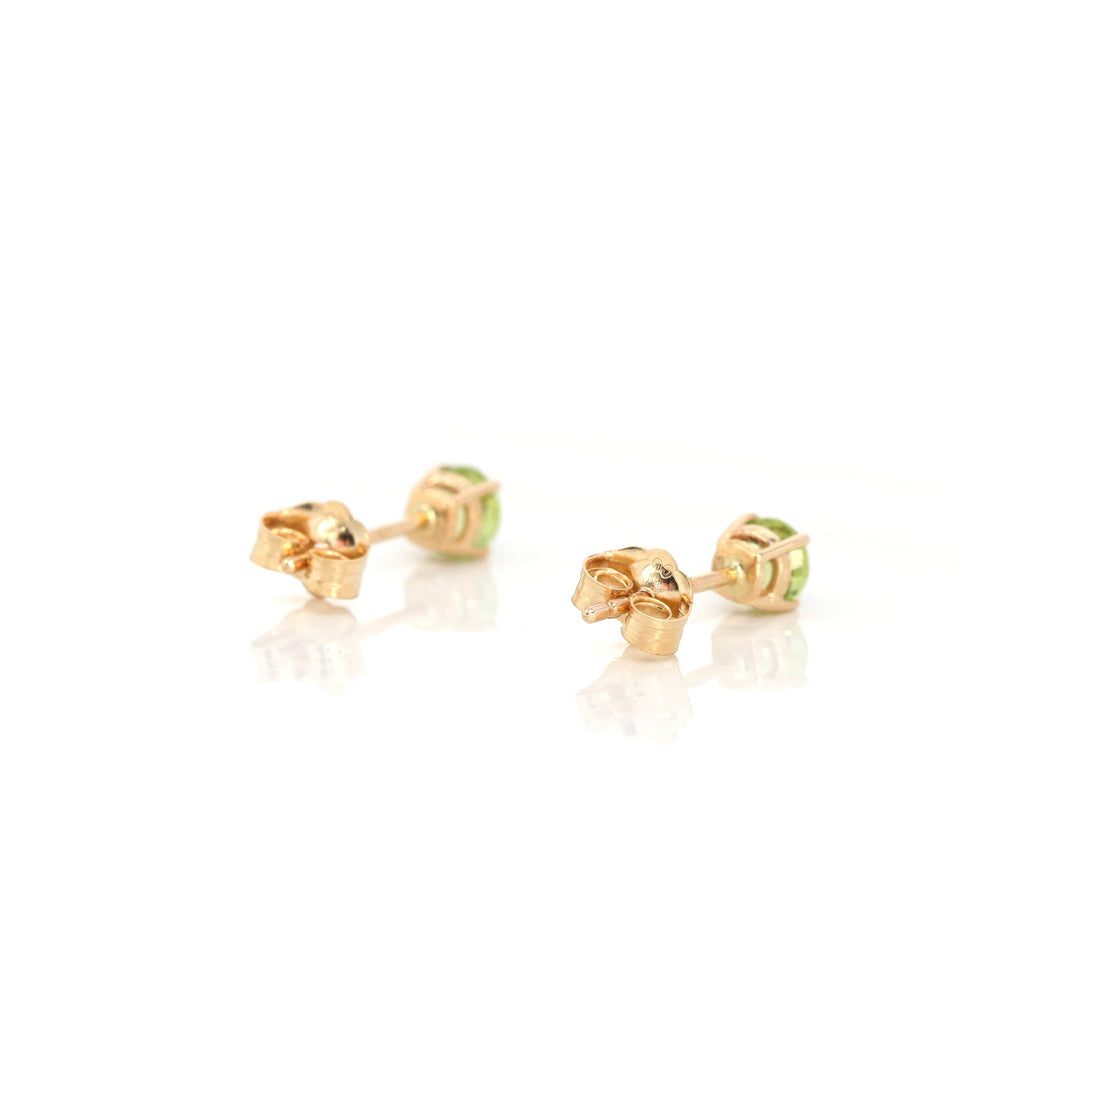 Baikalla Jewelry Gold Gemstone Earrings Baikalla 14k Classic Yellow Gold Natural 4*4mm 1/2cttw Peridot Earrings